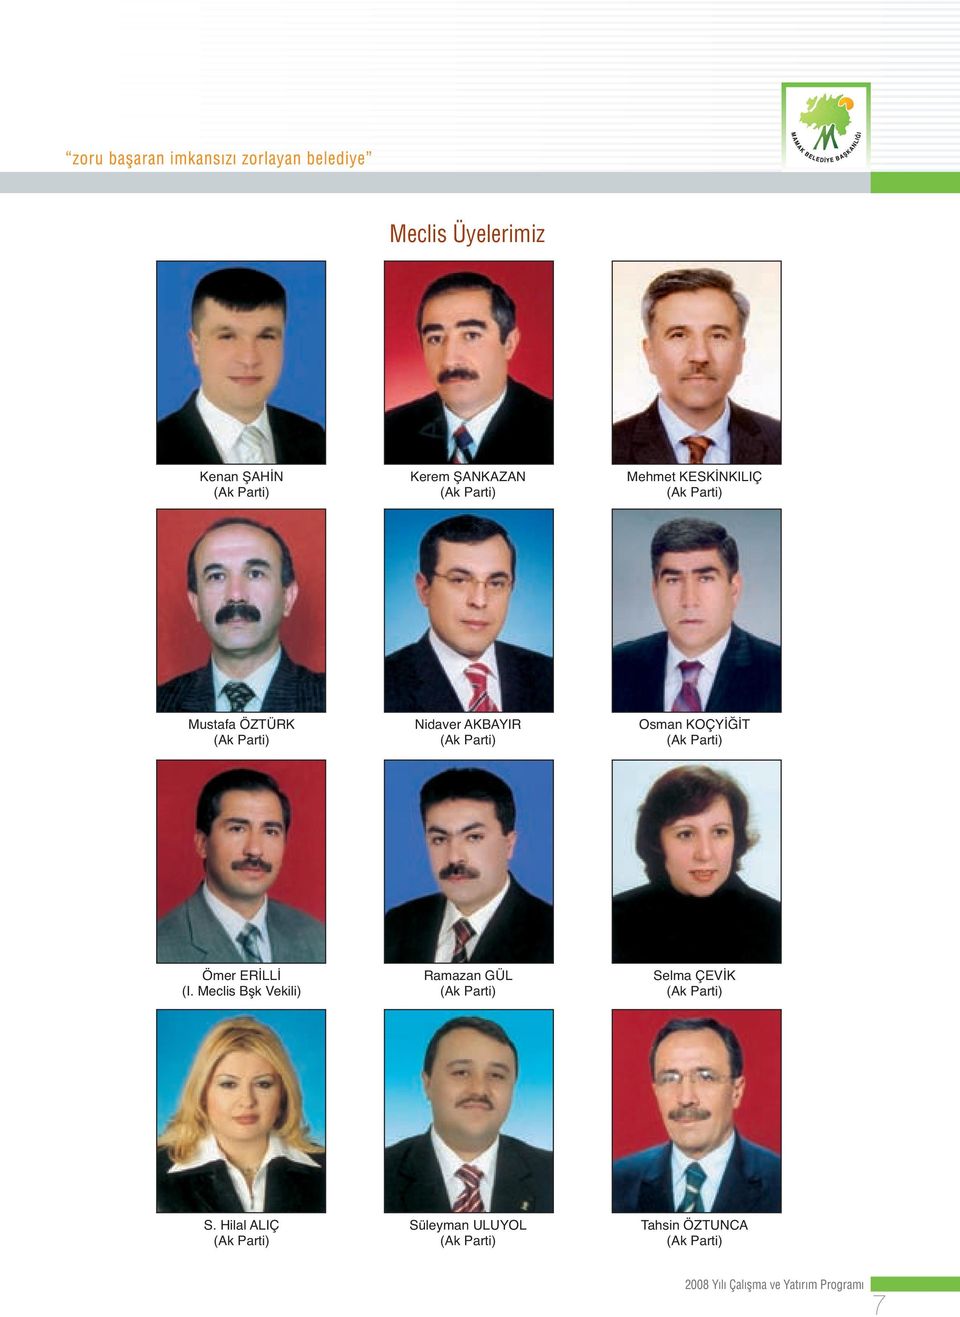 ERİLLİ (I. Meclis Bşk Vekili) Ramazan GÜL (Ak Parti) Selma ÇEVİK (Ak Parti) S.